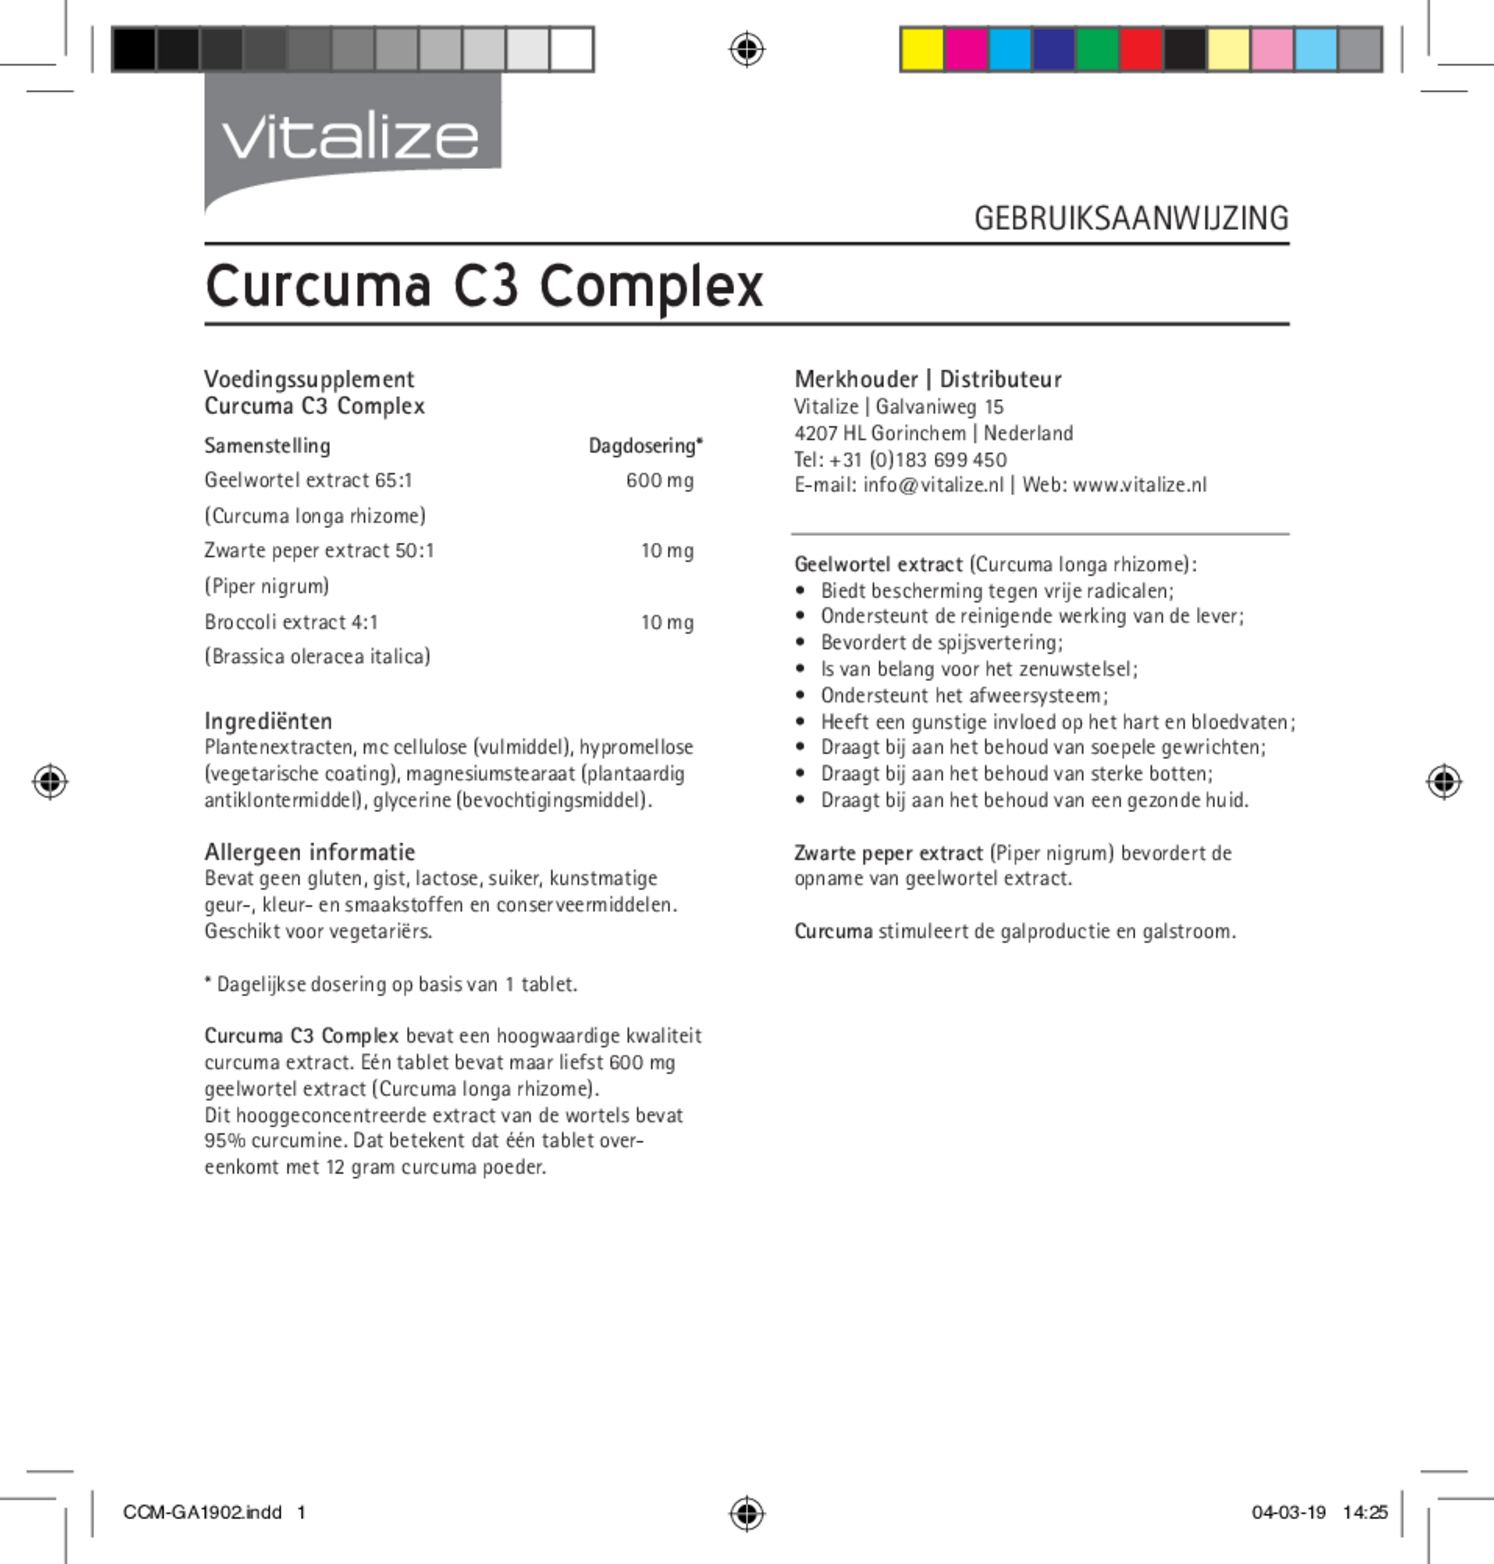 Curcuma C3 Complex Tabletten afbeelding van document #1, gebruiksaanwijzing